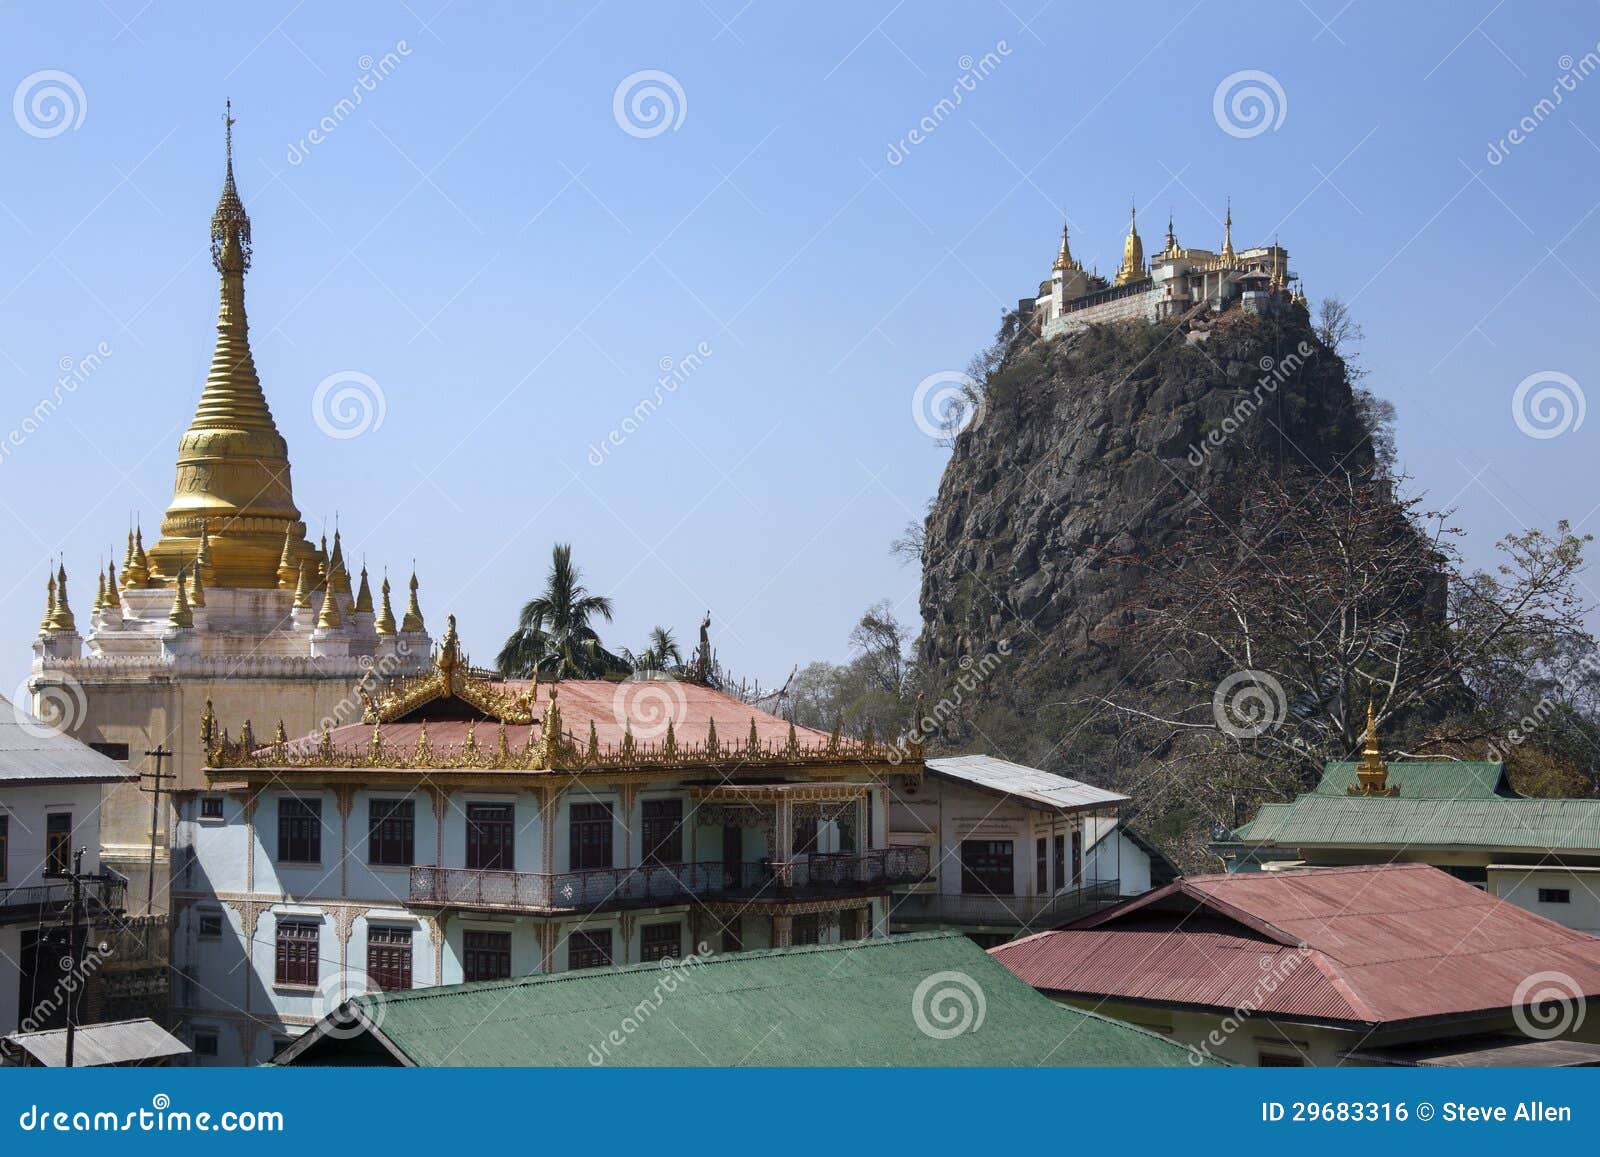 mount popa temple - myanmar (burma)